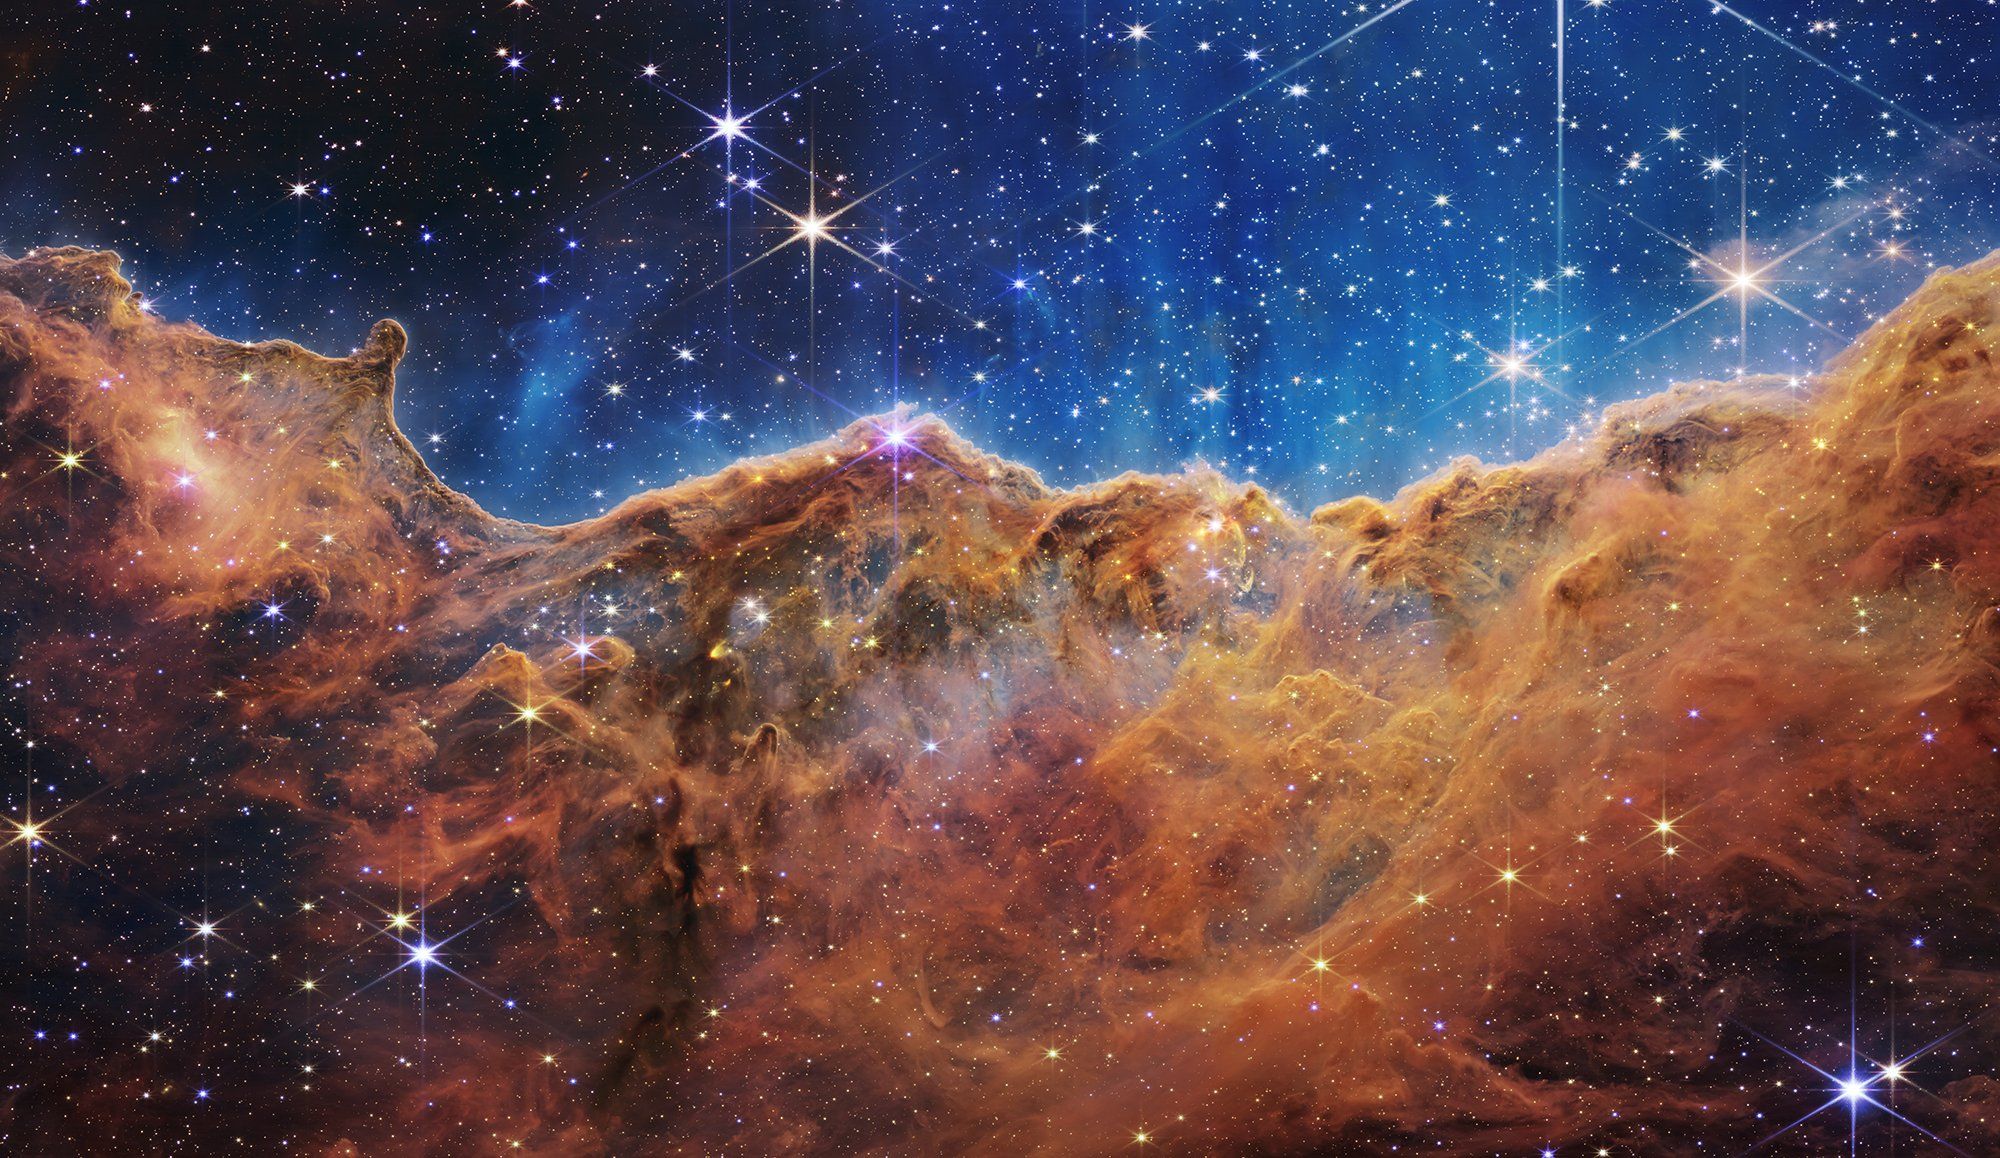 मृत तारे और डांसिंग गैलेक्सीज...Nasa के जेम्स वेब स्पेस टेलिस्कोप ने भेजीं अद्भुत तस्वीरें 